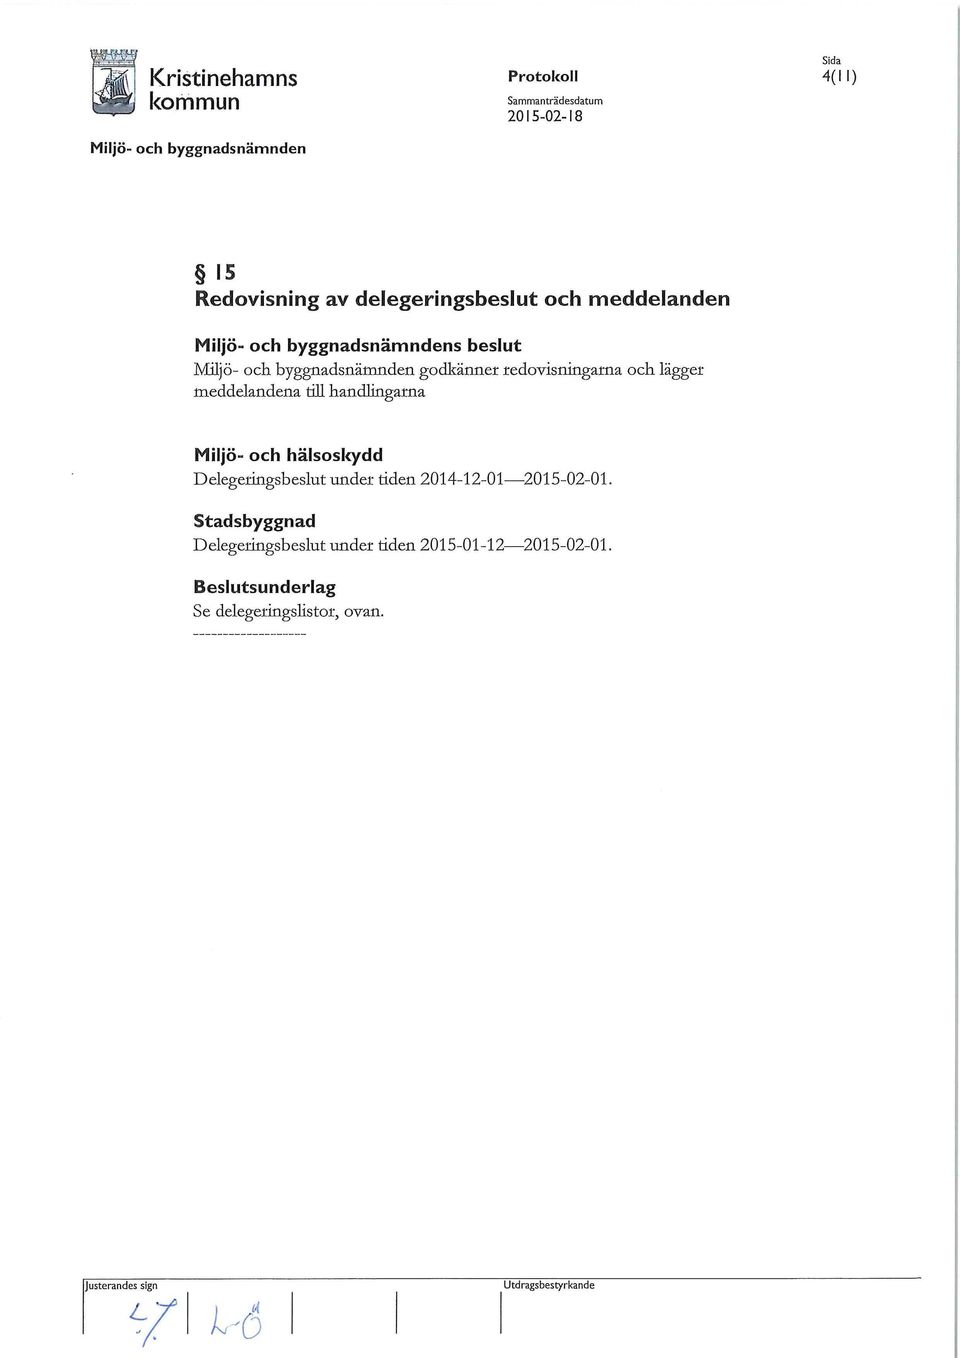 hälsoskydd Delegeringsbeslut under tiden 2014-12-01-2015-02-01.